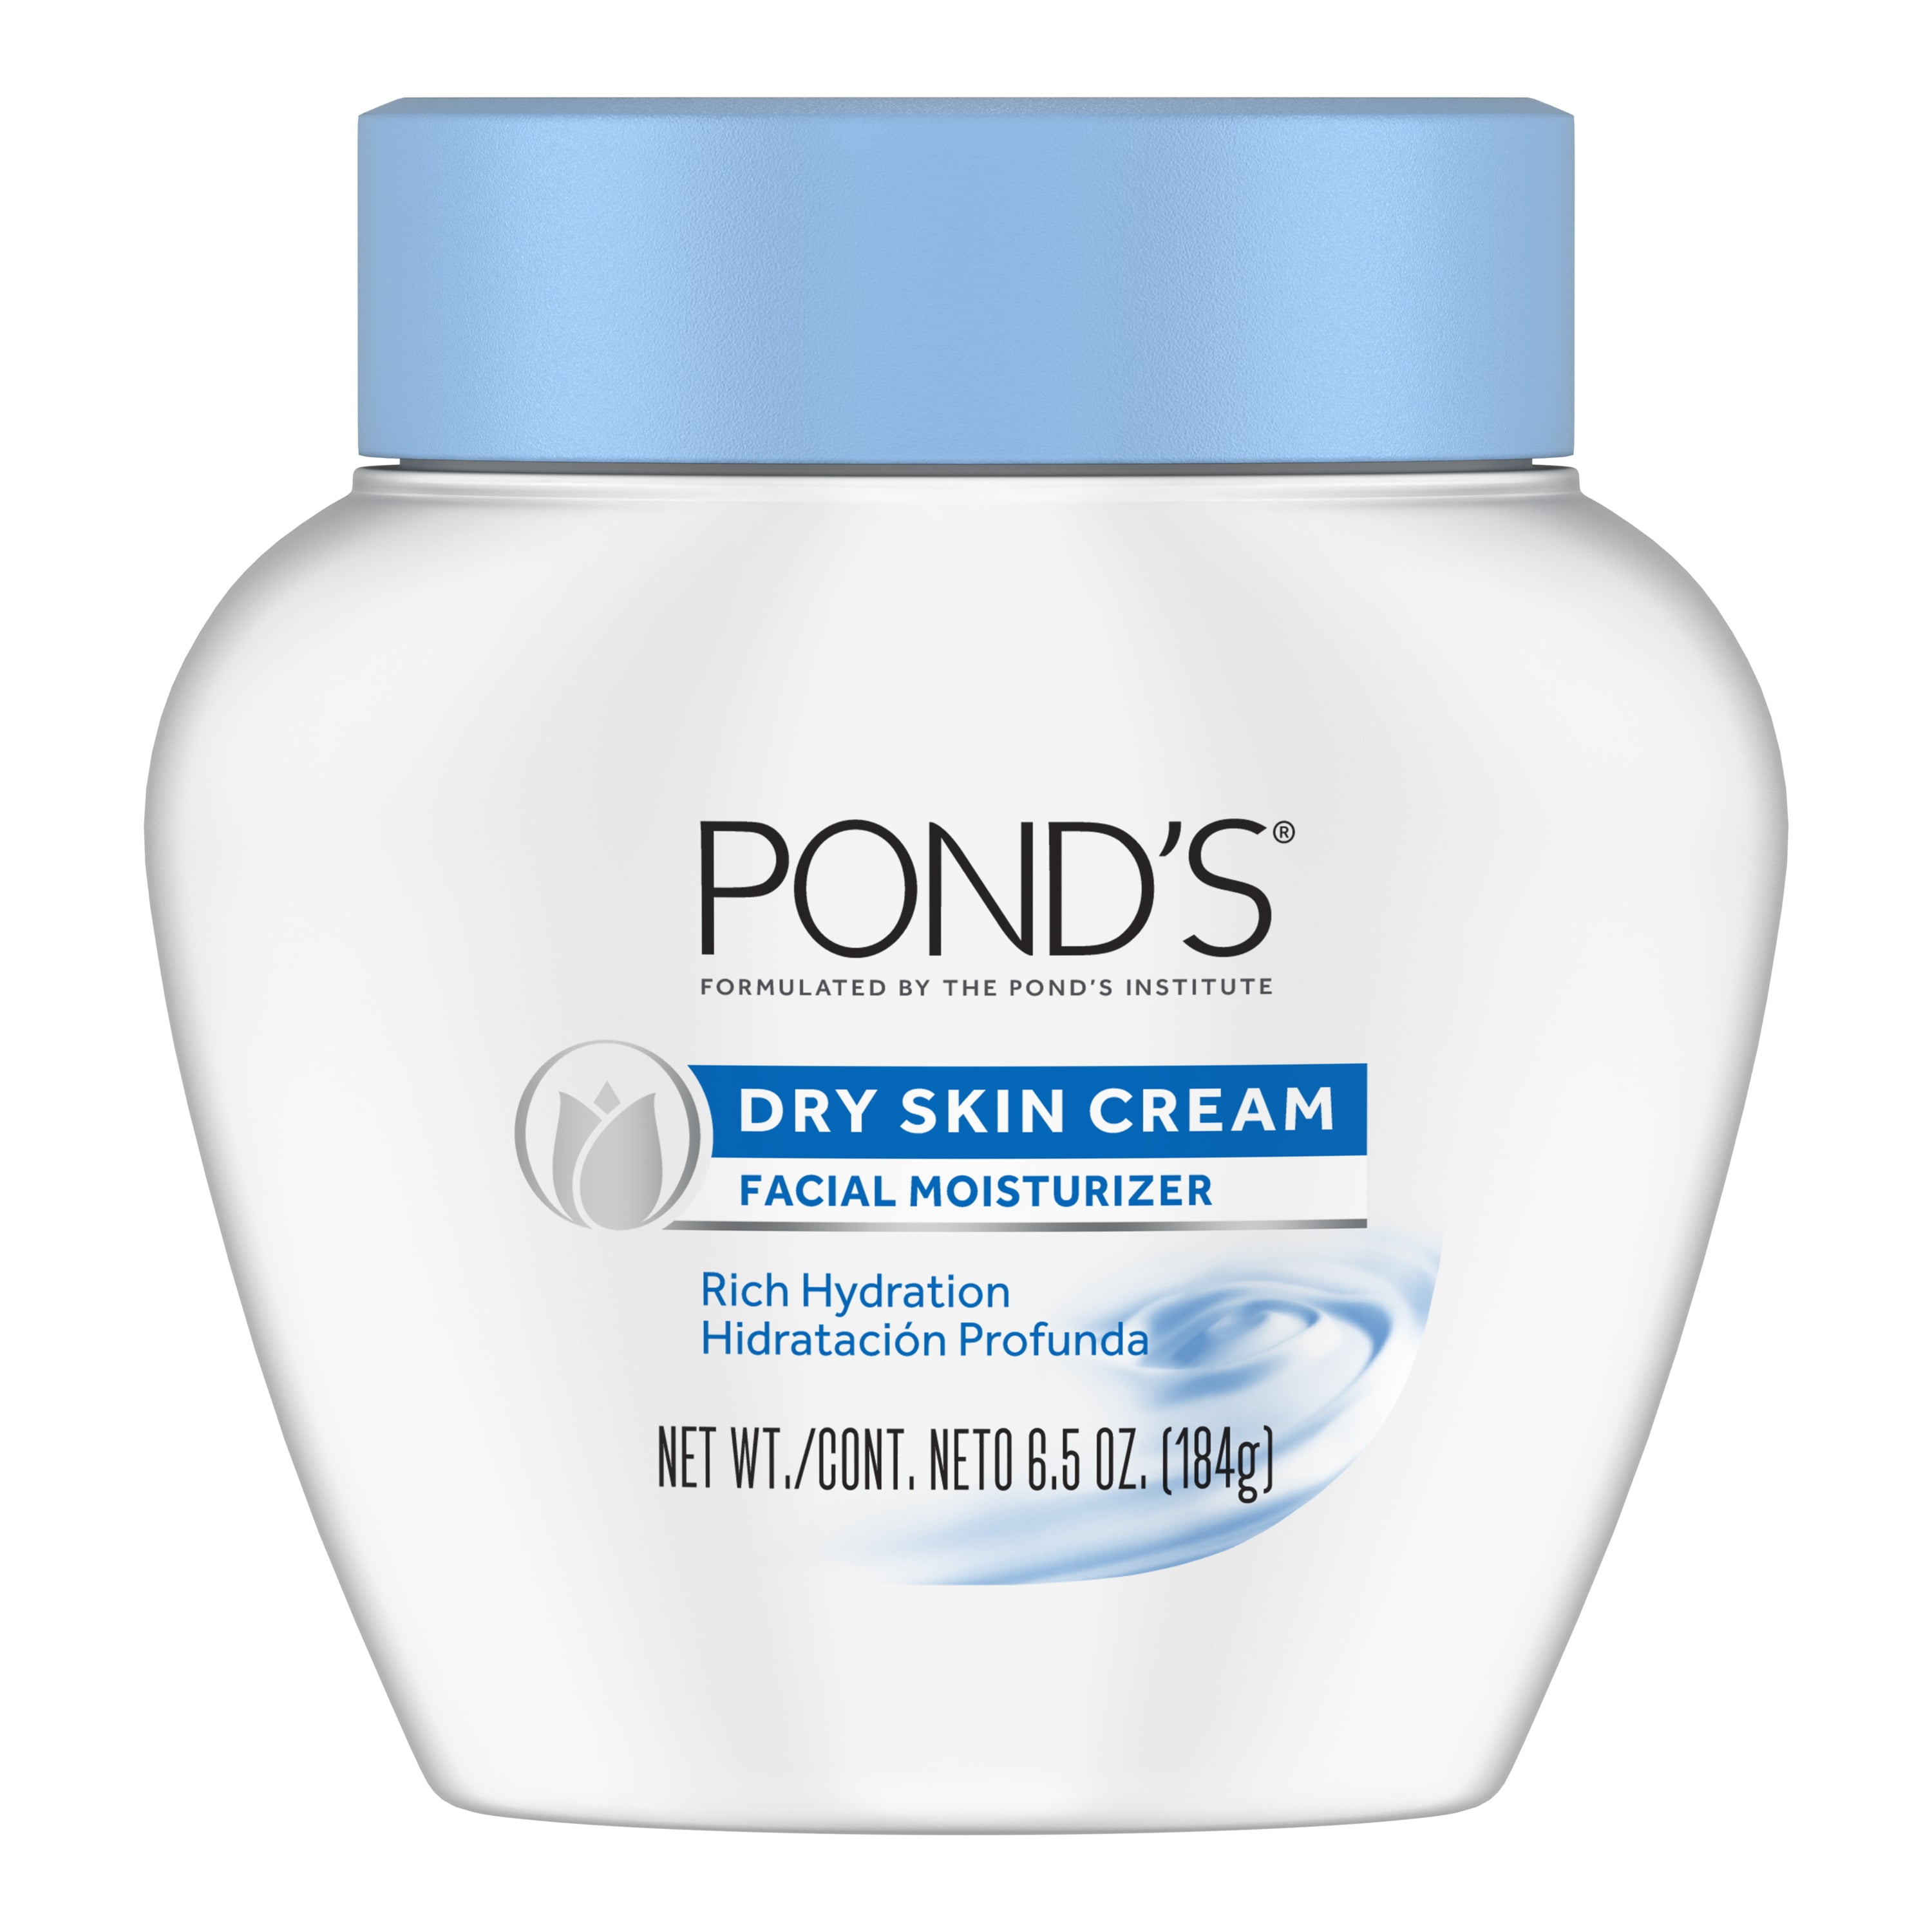 POND'S Dry Skin Facial Moisturizer Cream, 6.5 oz